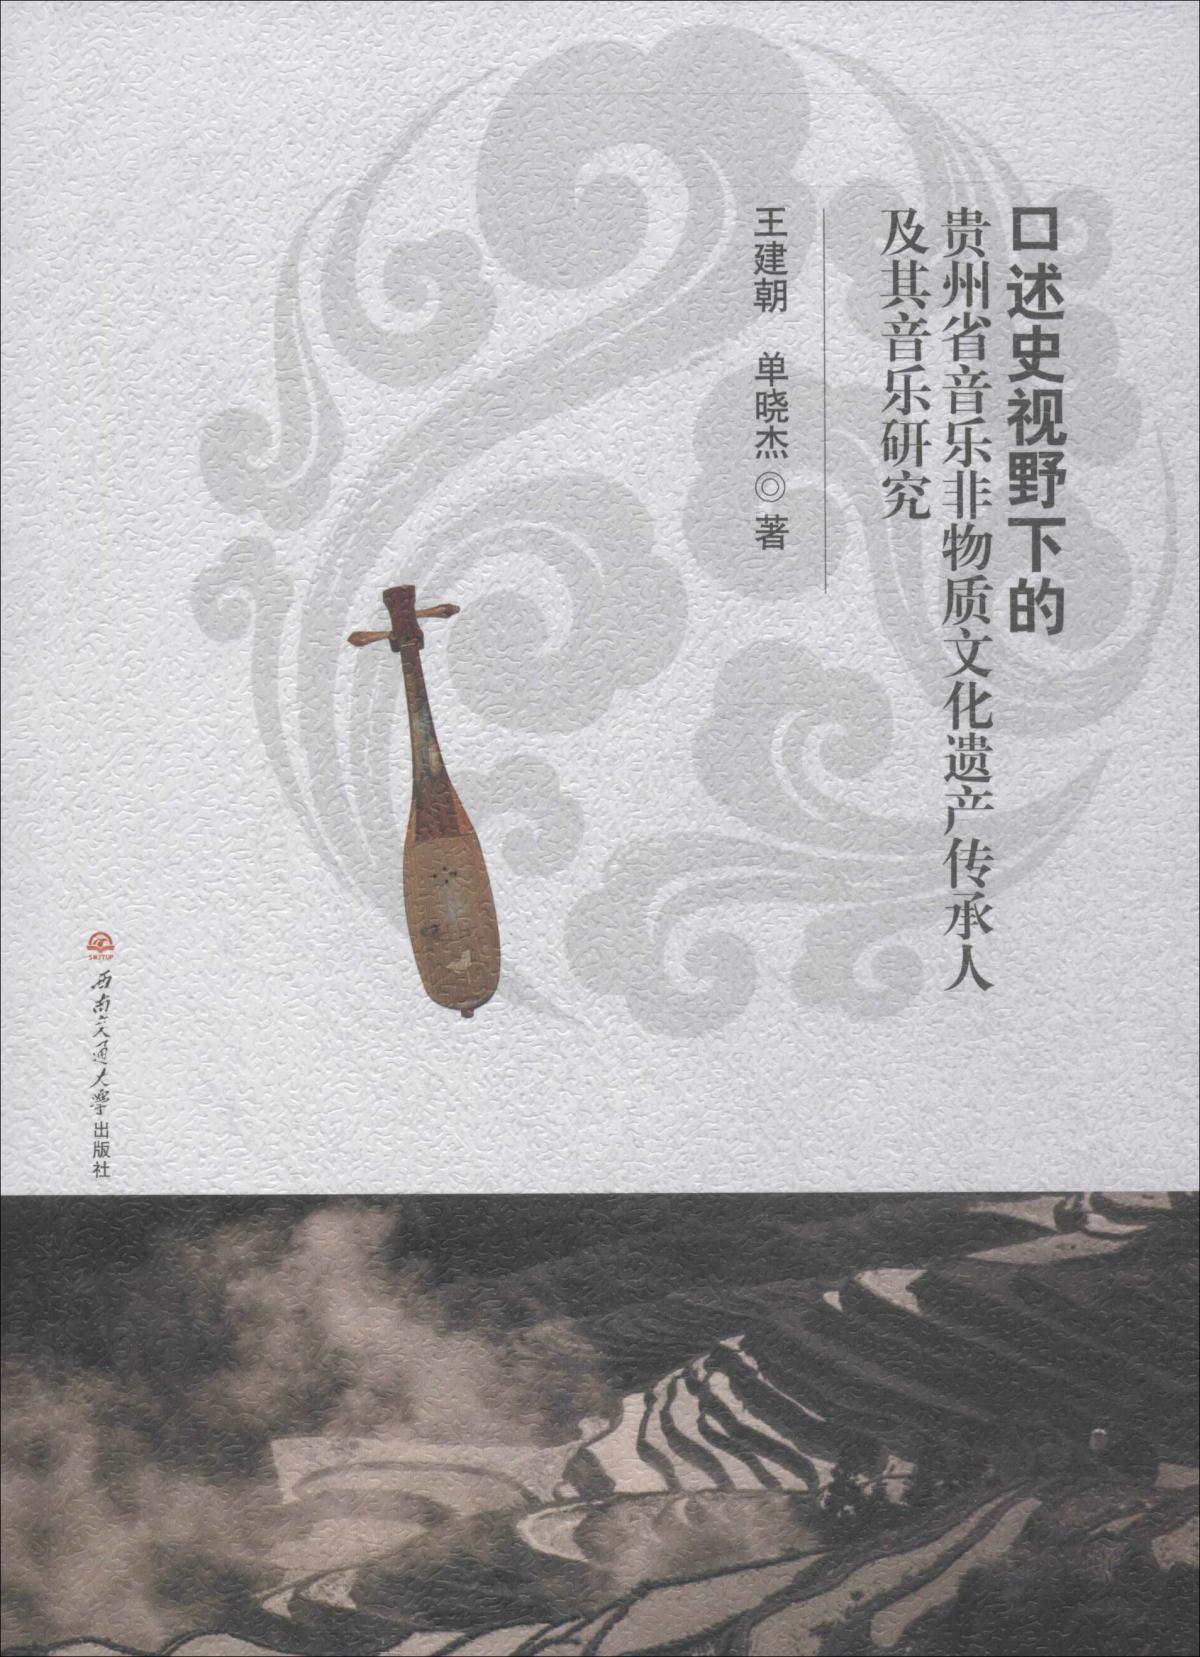 口述史视野下的贵州省音乐非物质文化遗产传承人及其音乐研究